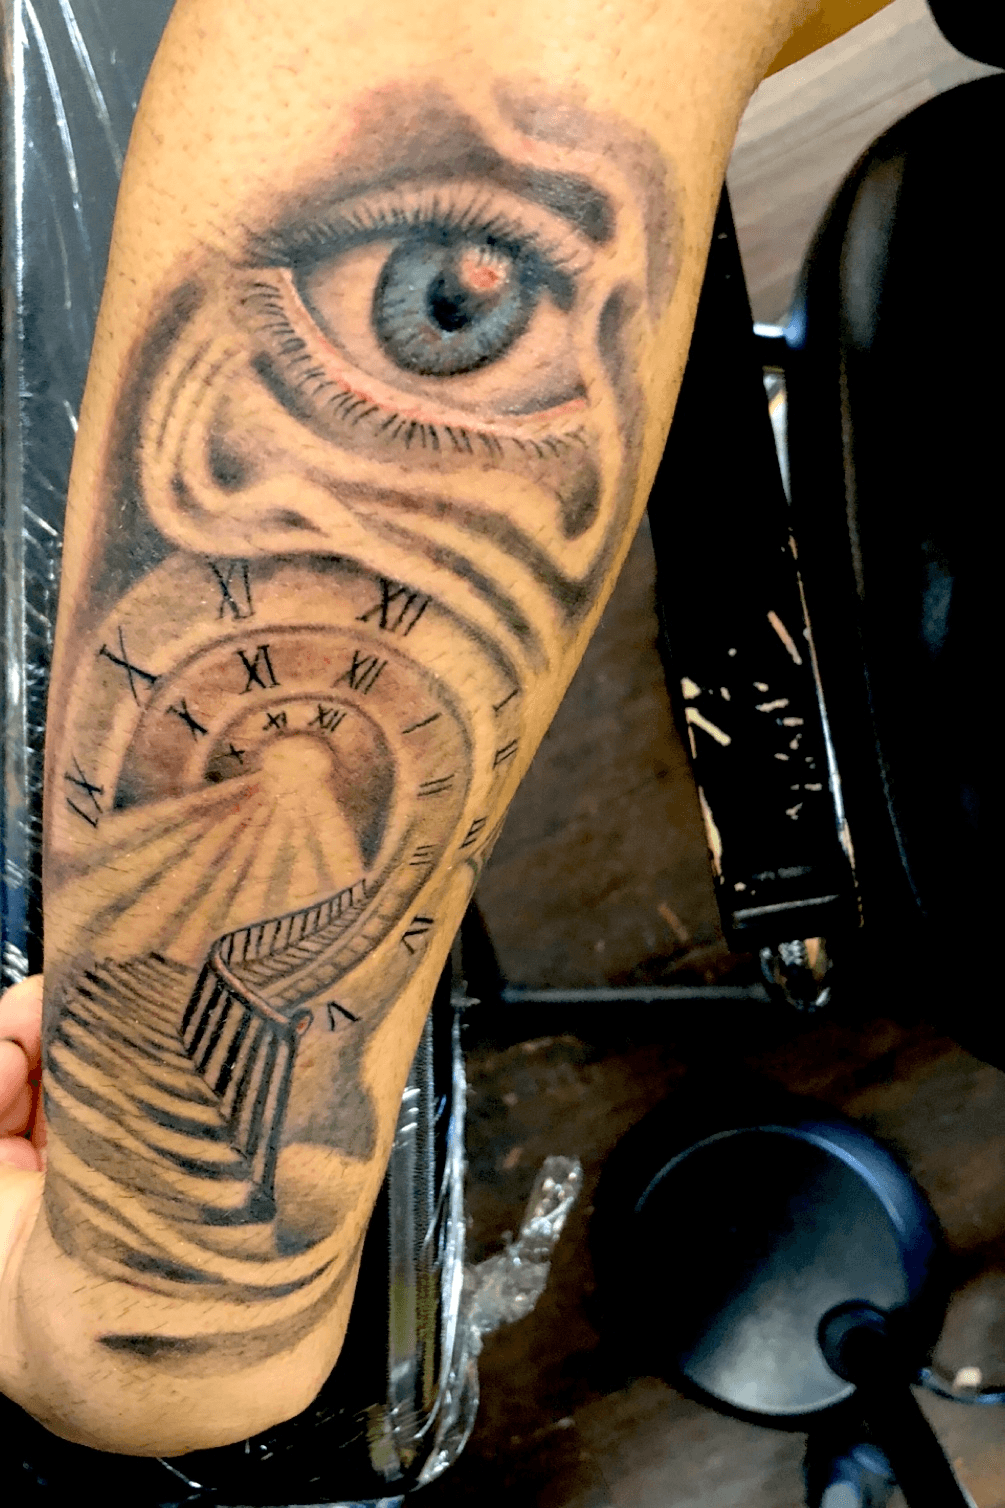 time will tell tattooTikTok Search